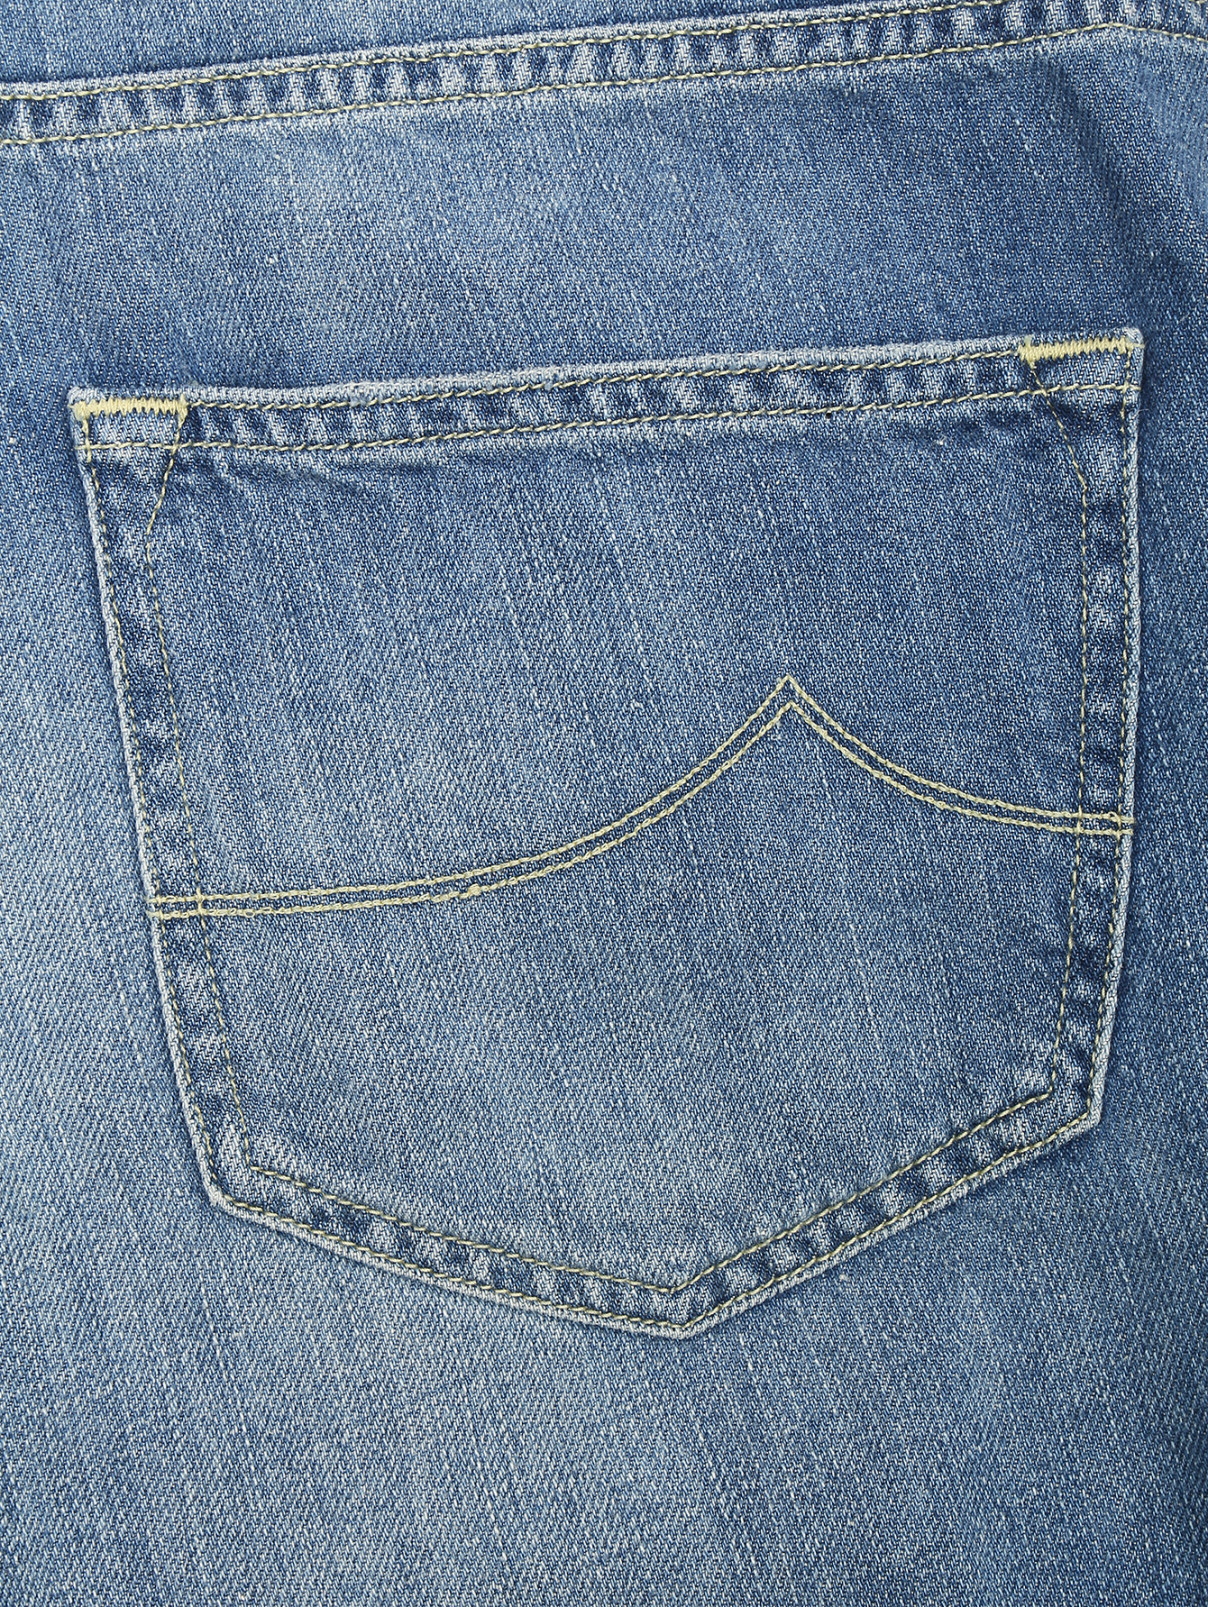 Шорты джинсовые с вышивкой Jacob Cohen  –  Деталь  – Цвет:  Синий